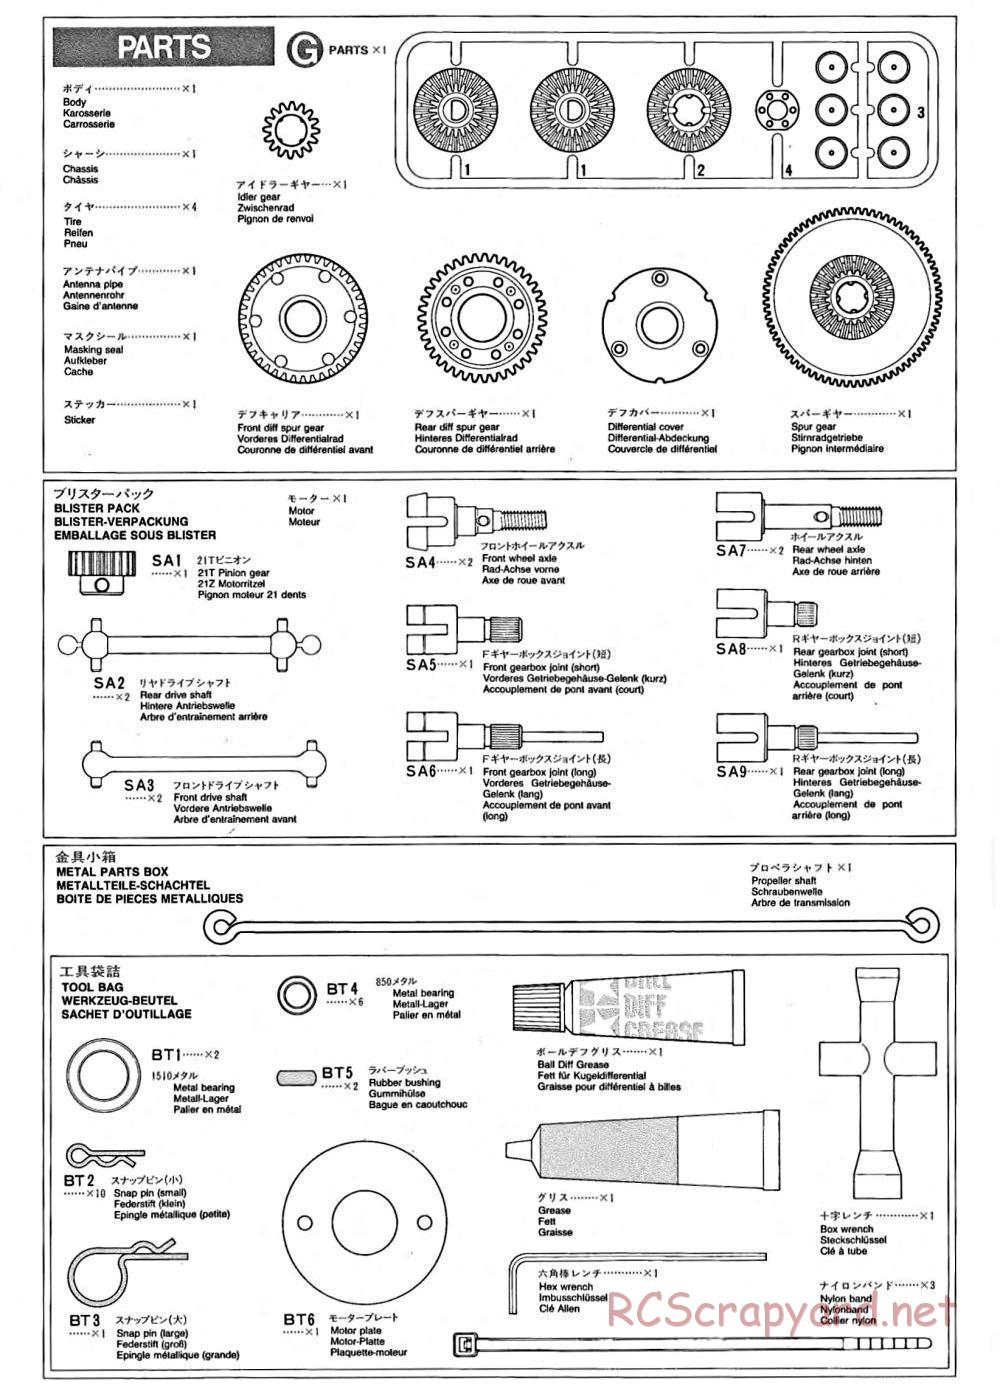 Tamiya - TA-02 Chassis - Manual - Page 14